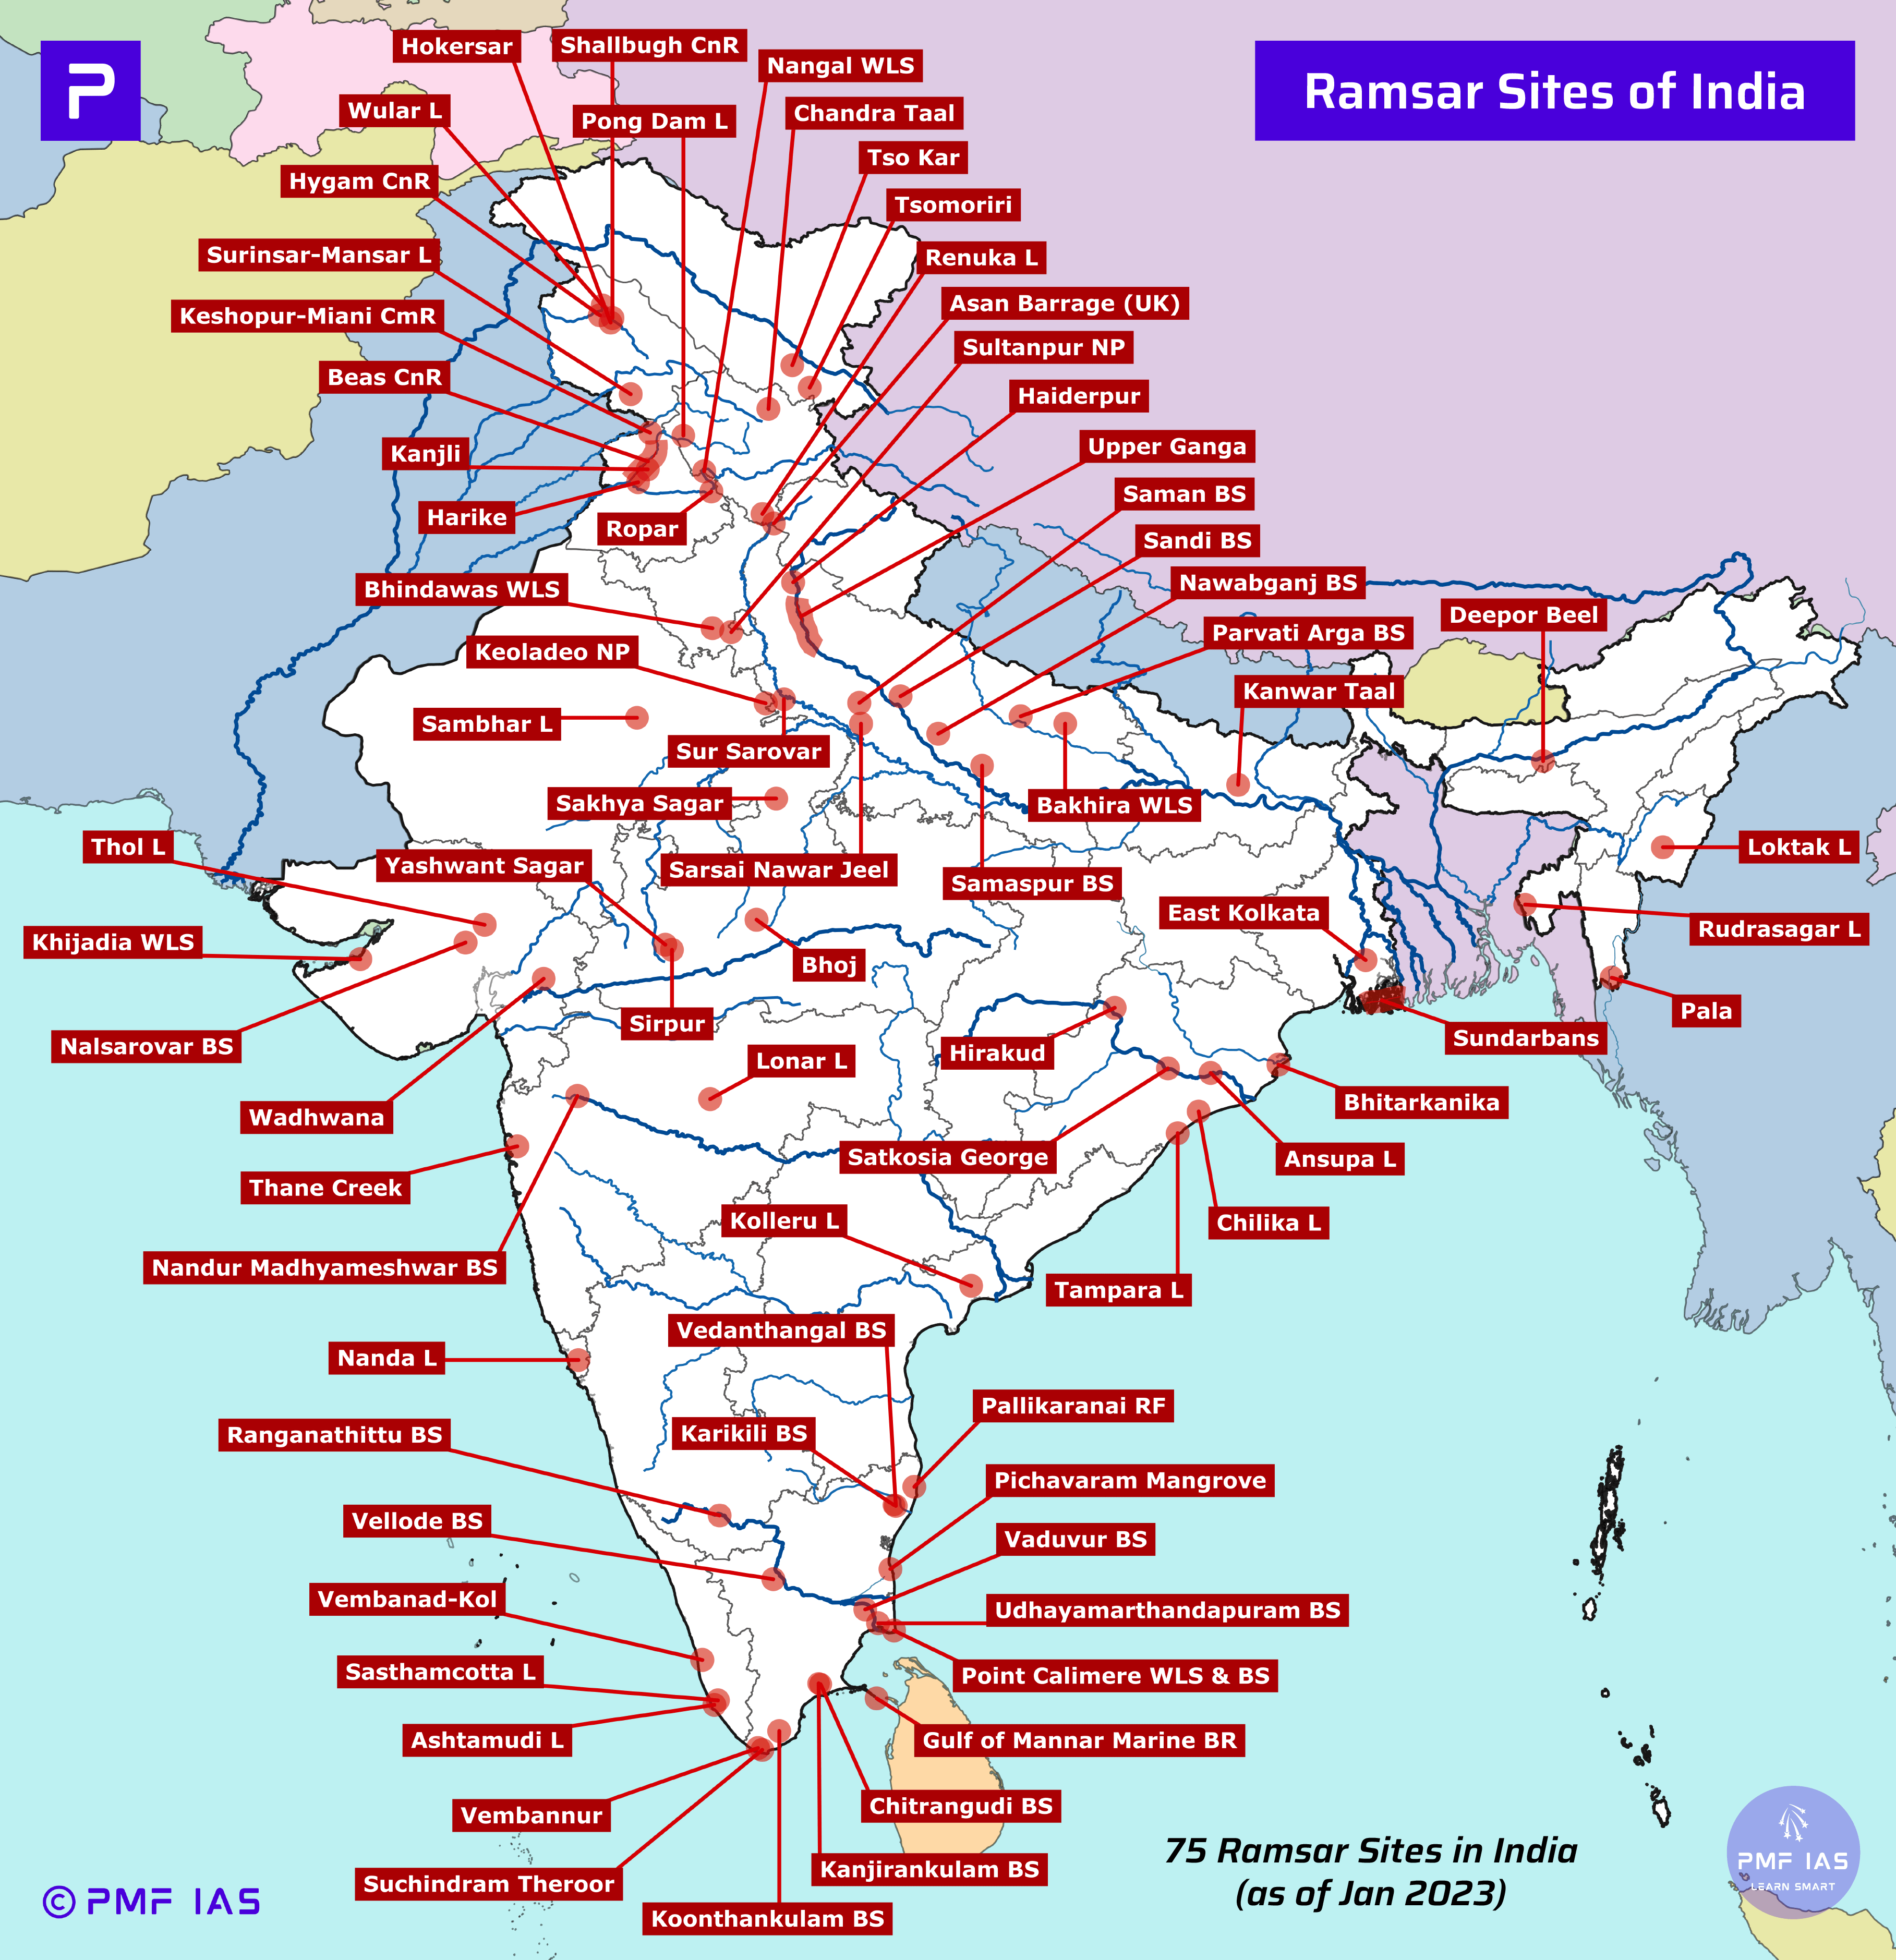 Ramsar Sites of India